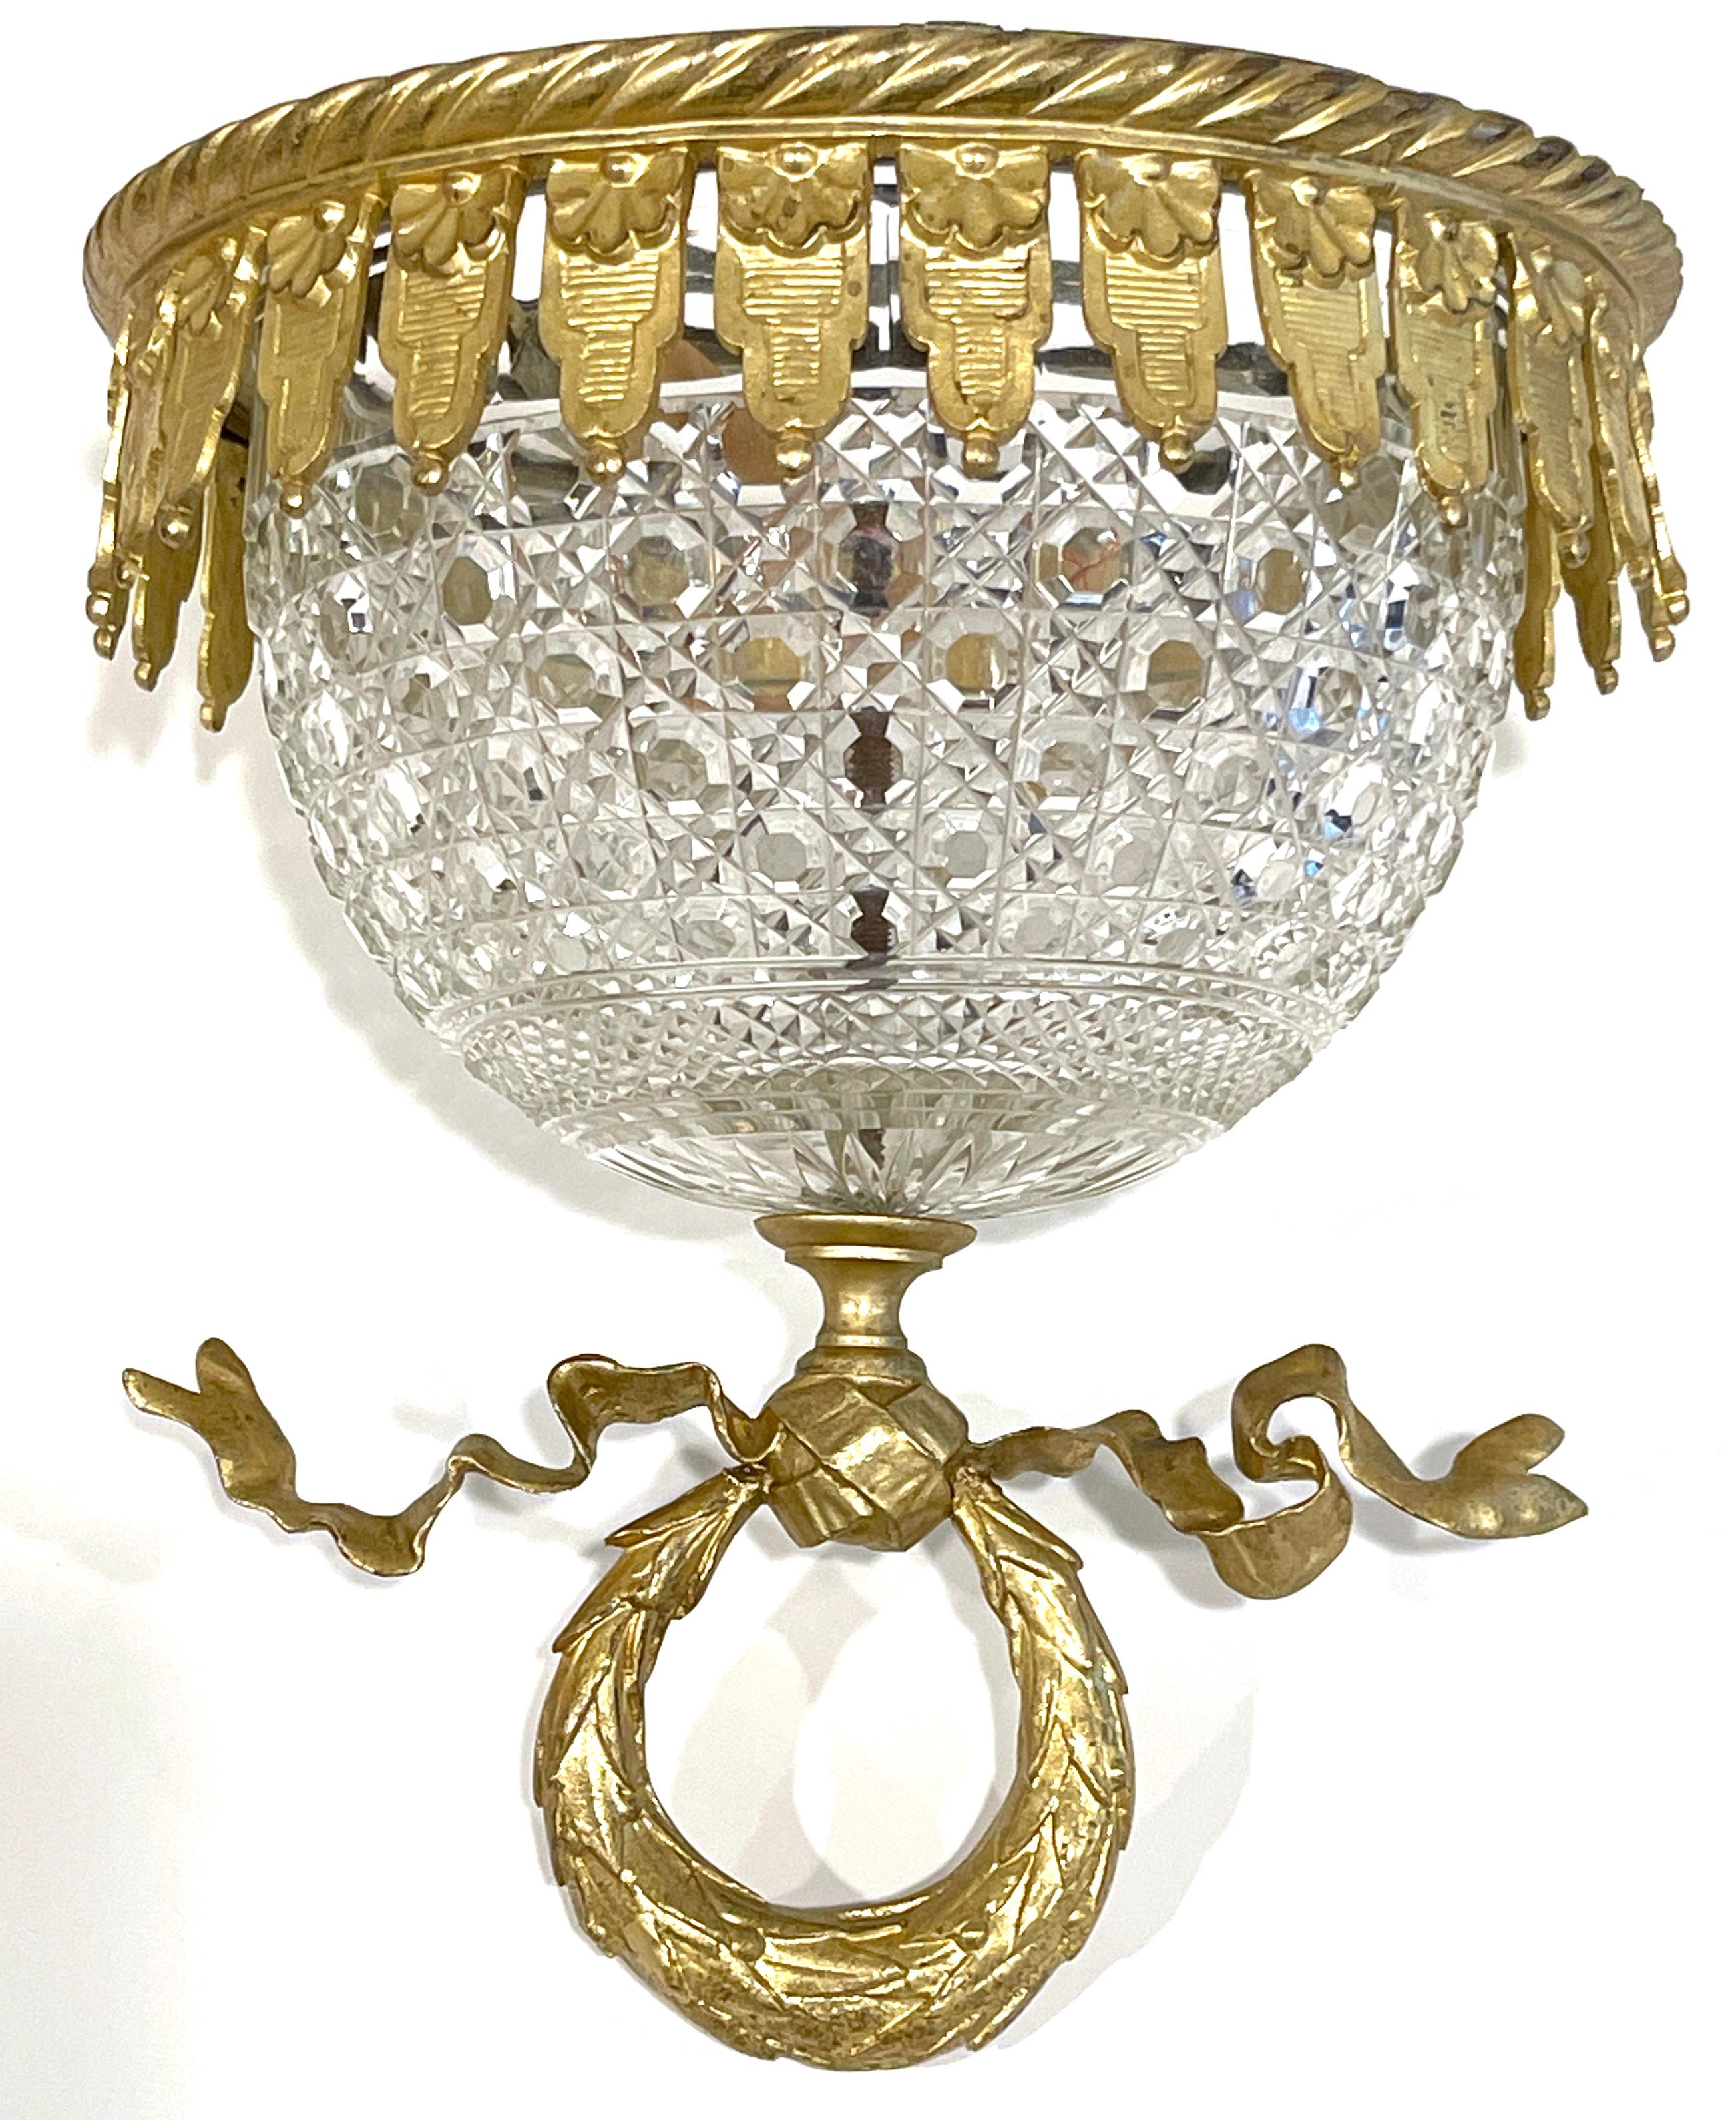 Antike Französisch Ormolu montiert Baccarat (atrib.) Kristall bündig montieren Kronleuchter.
Frankreich, um 1900
Dem Baccarat zugeschrieben 

Ein beeindruckendes, zierliches Werk, das die hohe Handwerkskunst und das Design der Kristallwerke von